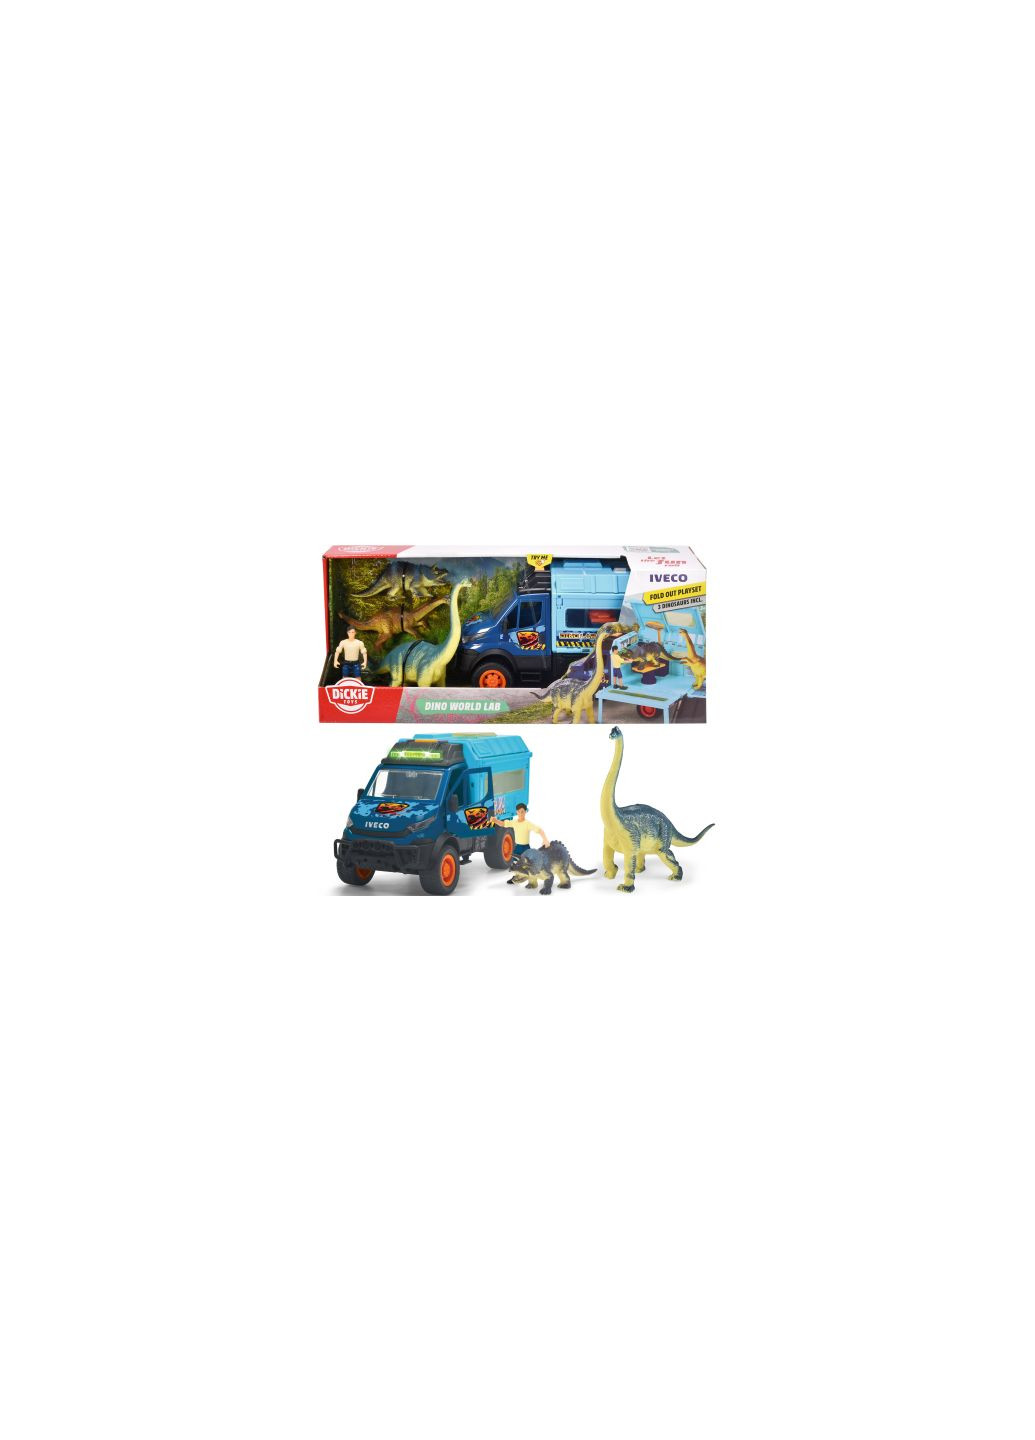 Игровой набор Исследование динозавров с машиной 28 см, 3 динозавров и фигурки (3837025) Dickie toys дослідження динозаврів з машиною 28 см, 3 динозавр (275456726)